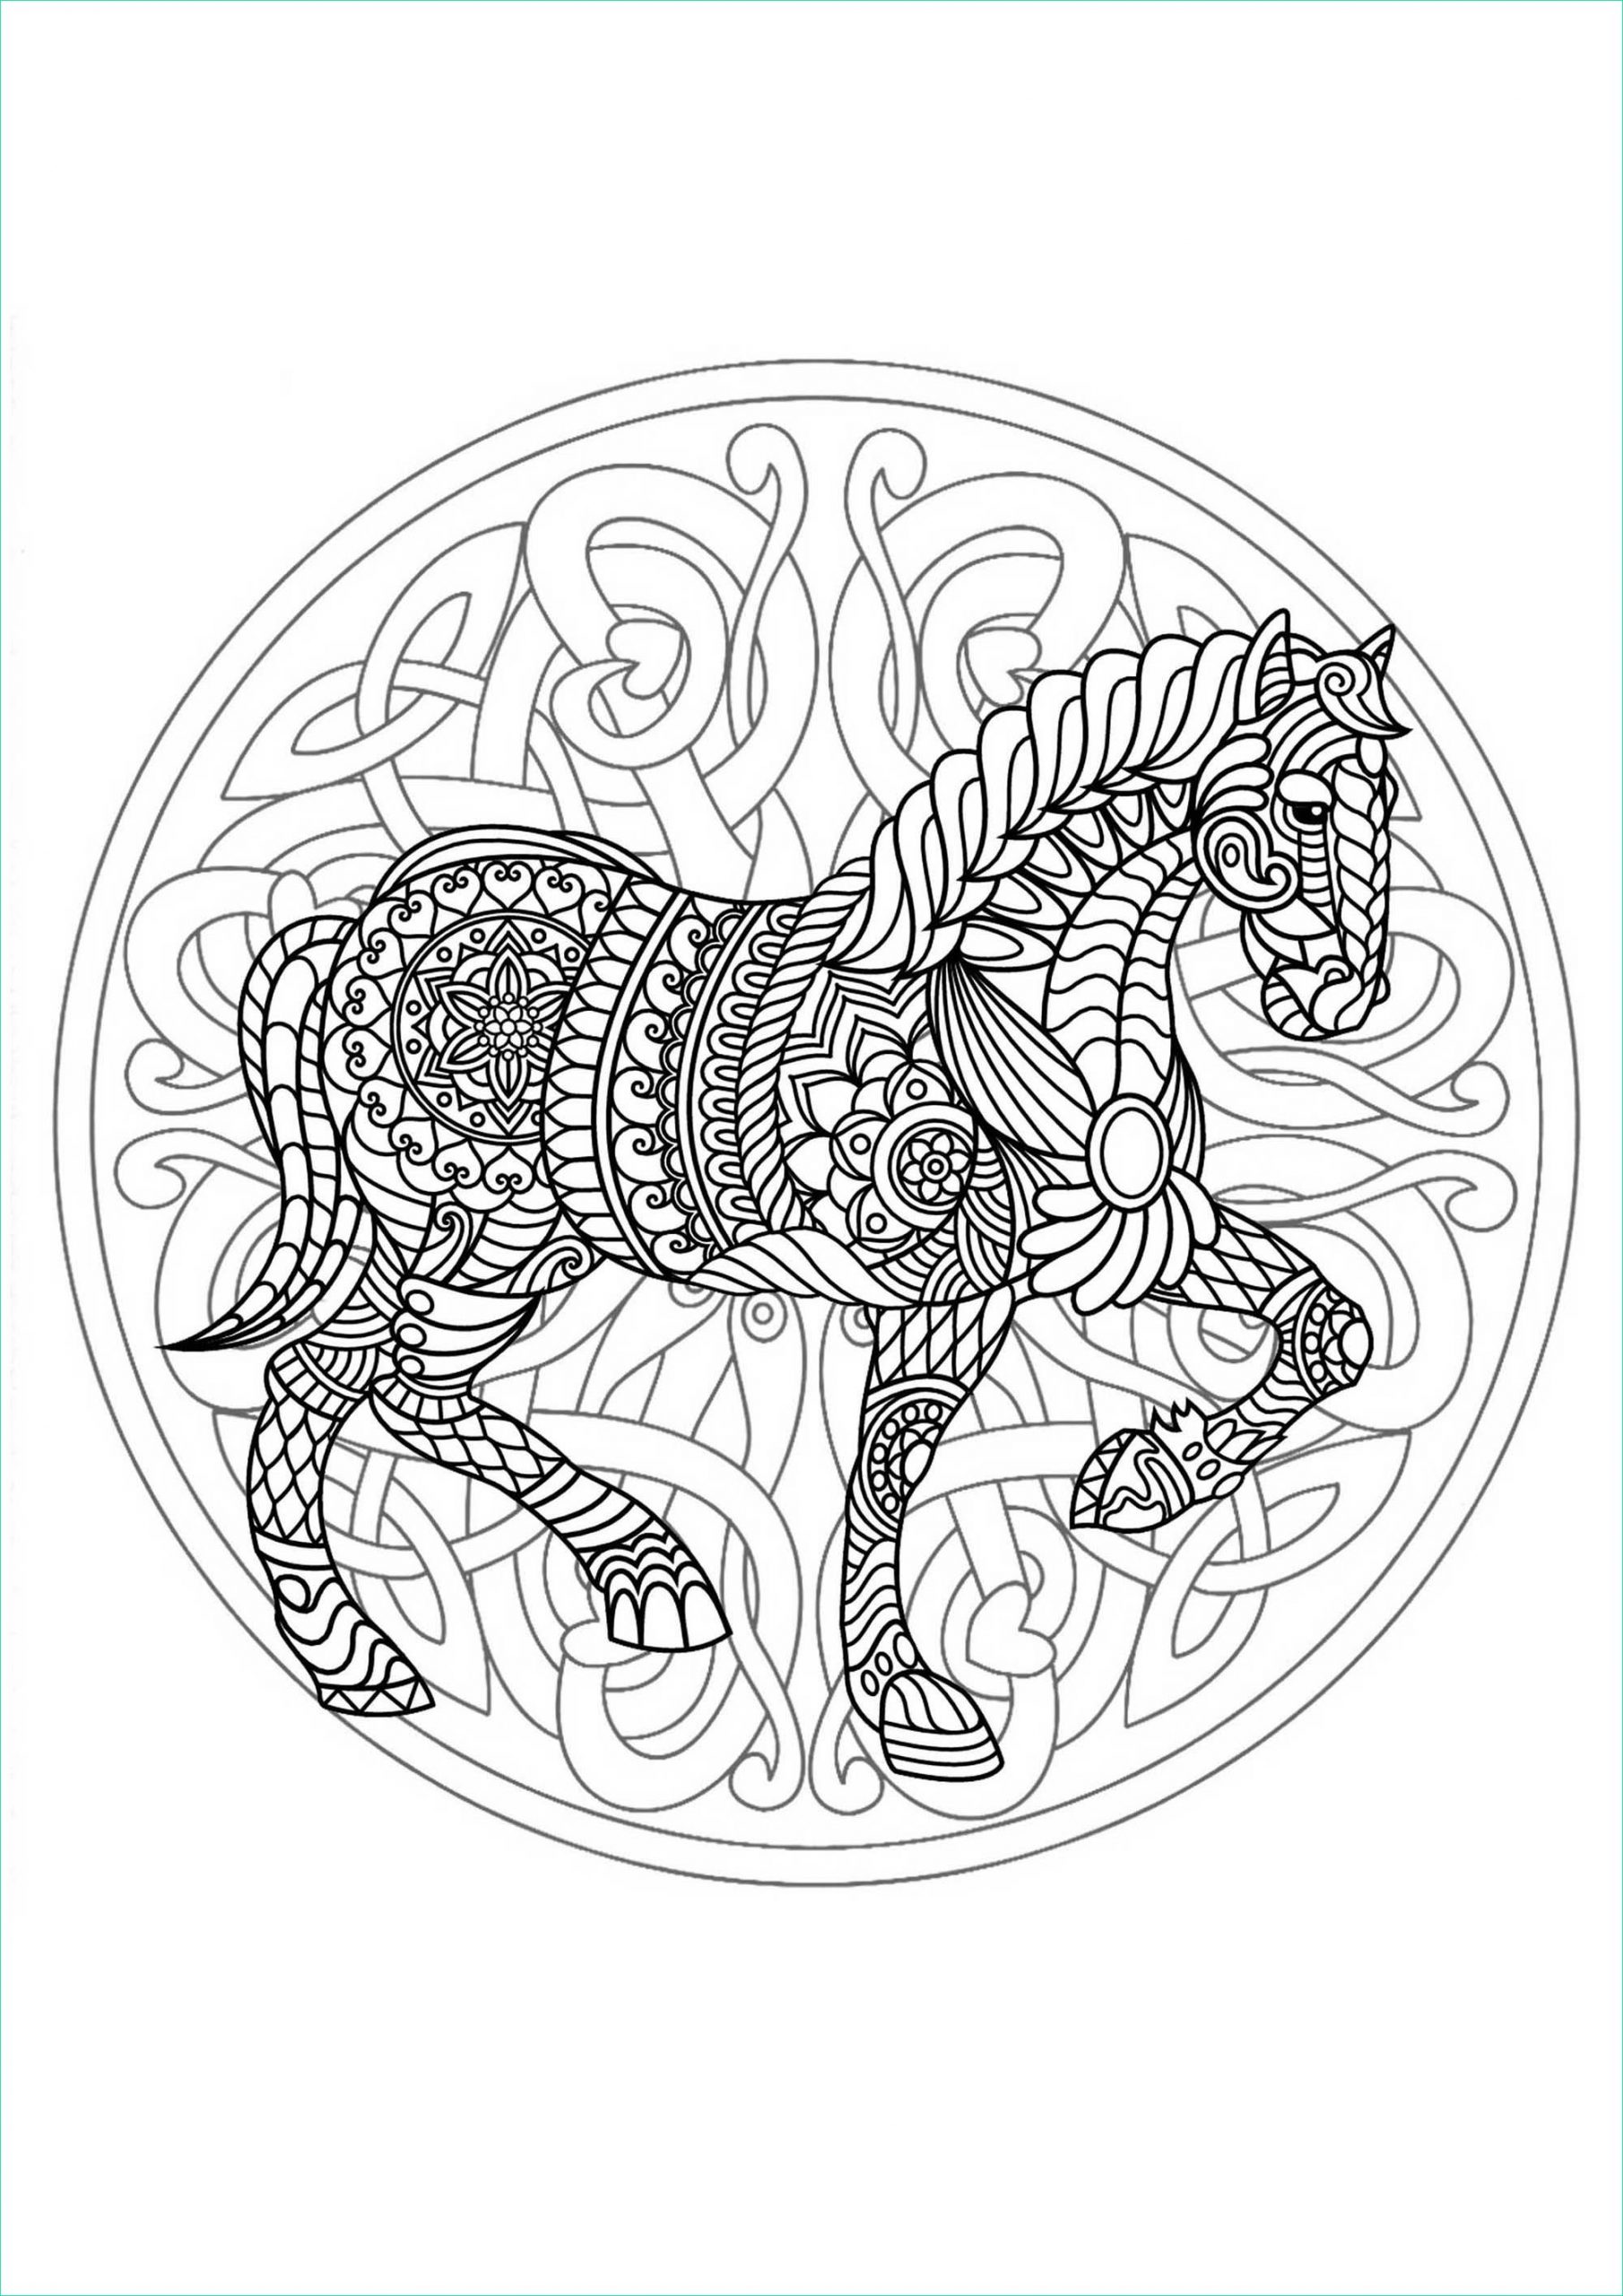 Coloriage Mandala De Princesse à Imprimer Beau Photographie Plex Mandala Coloring Page with Horse 3 Difficult